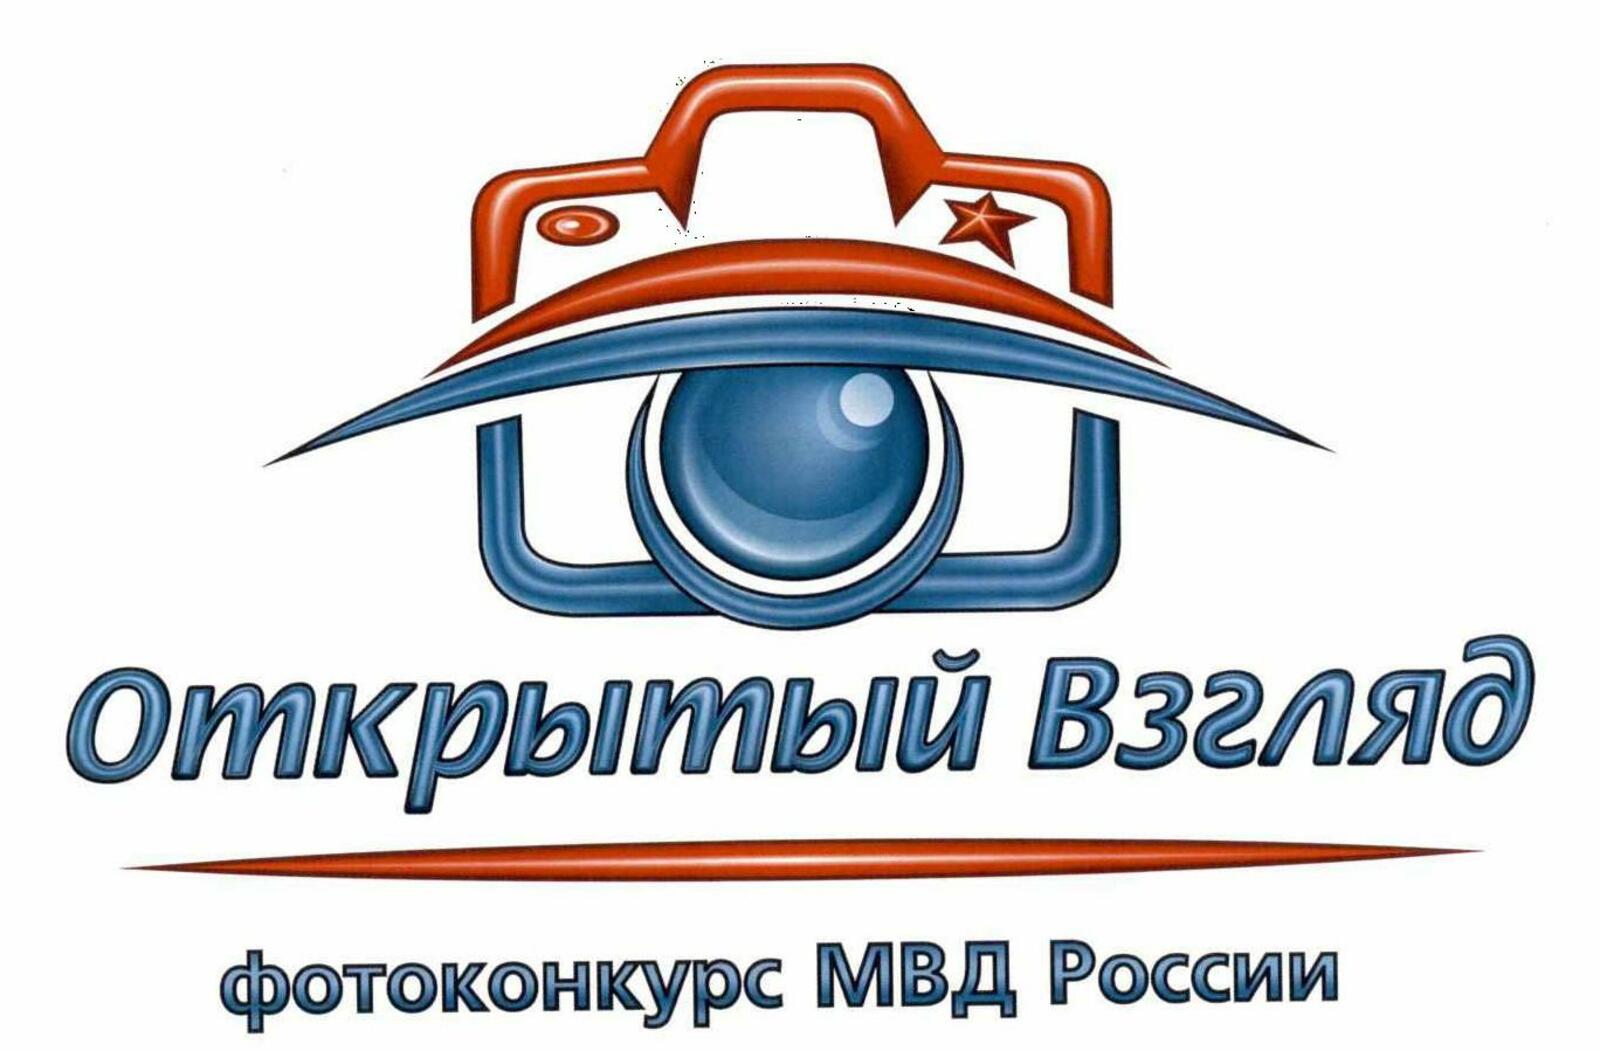 МВД России проводит фотоконкурс «Открытый взгляд»